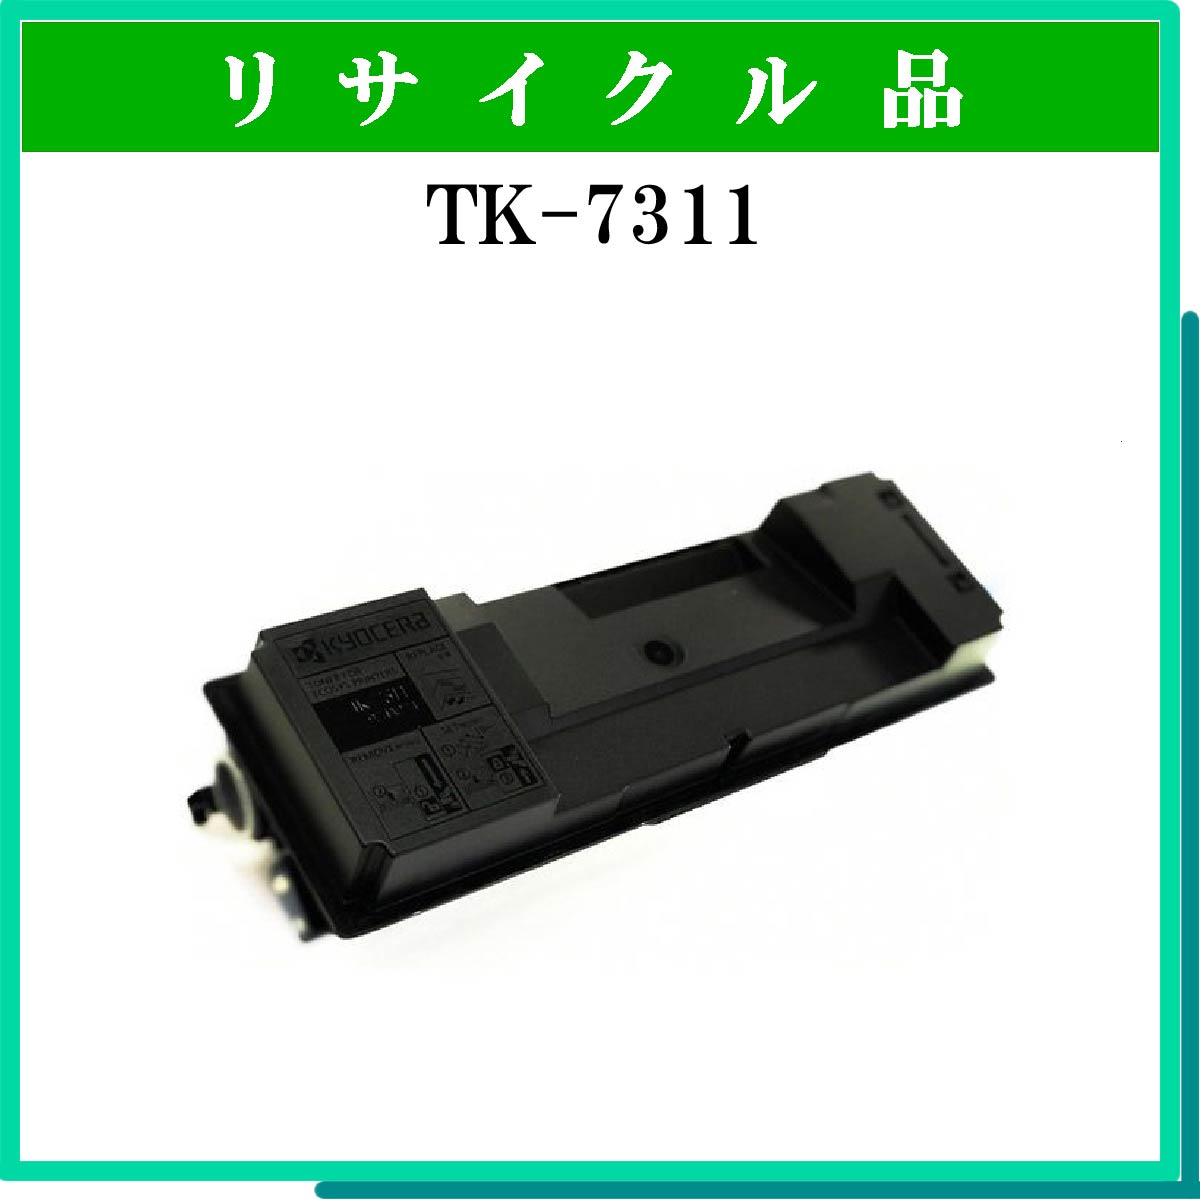 TK-7311